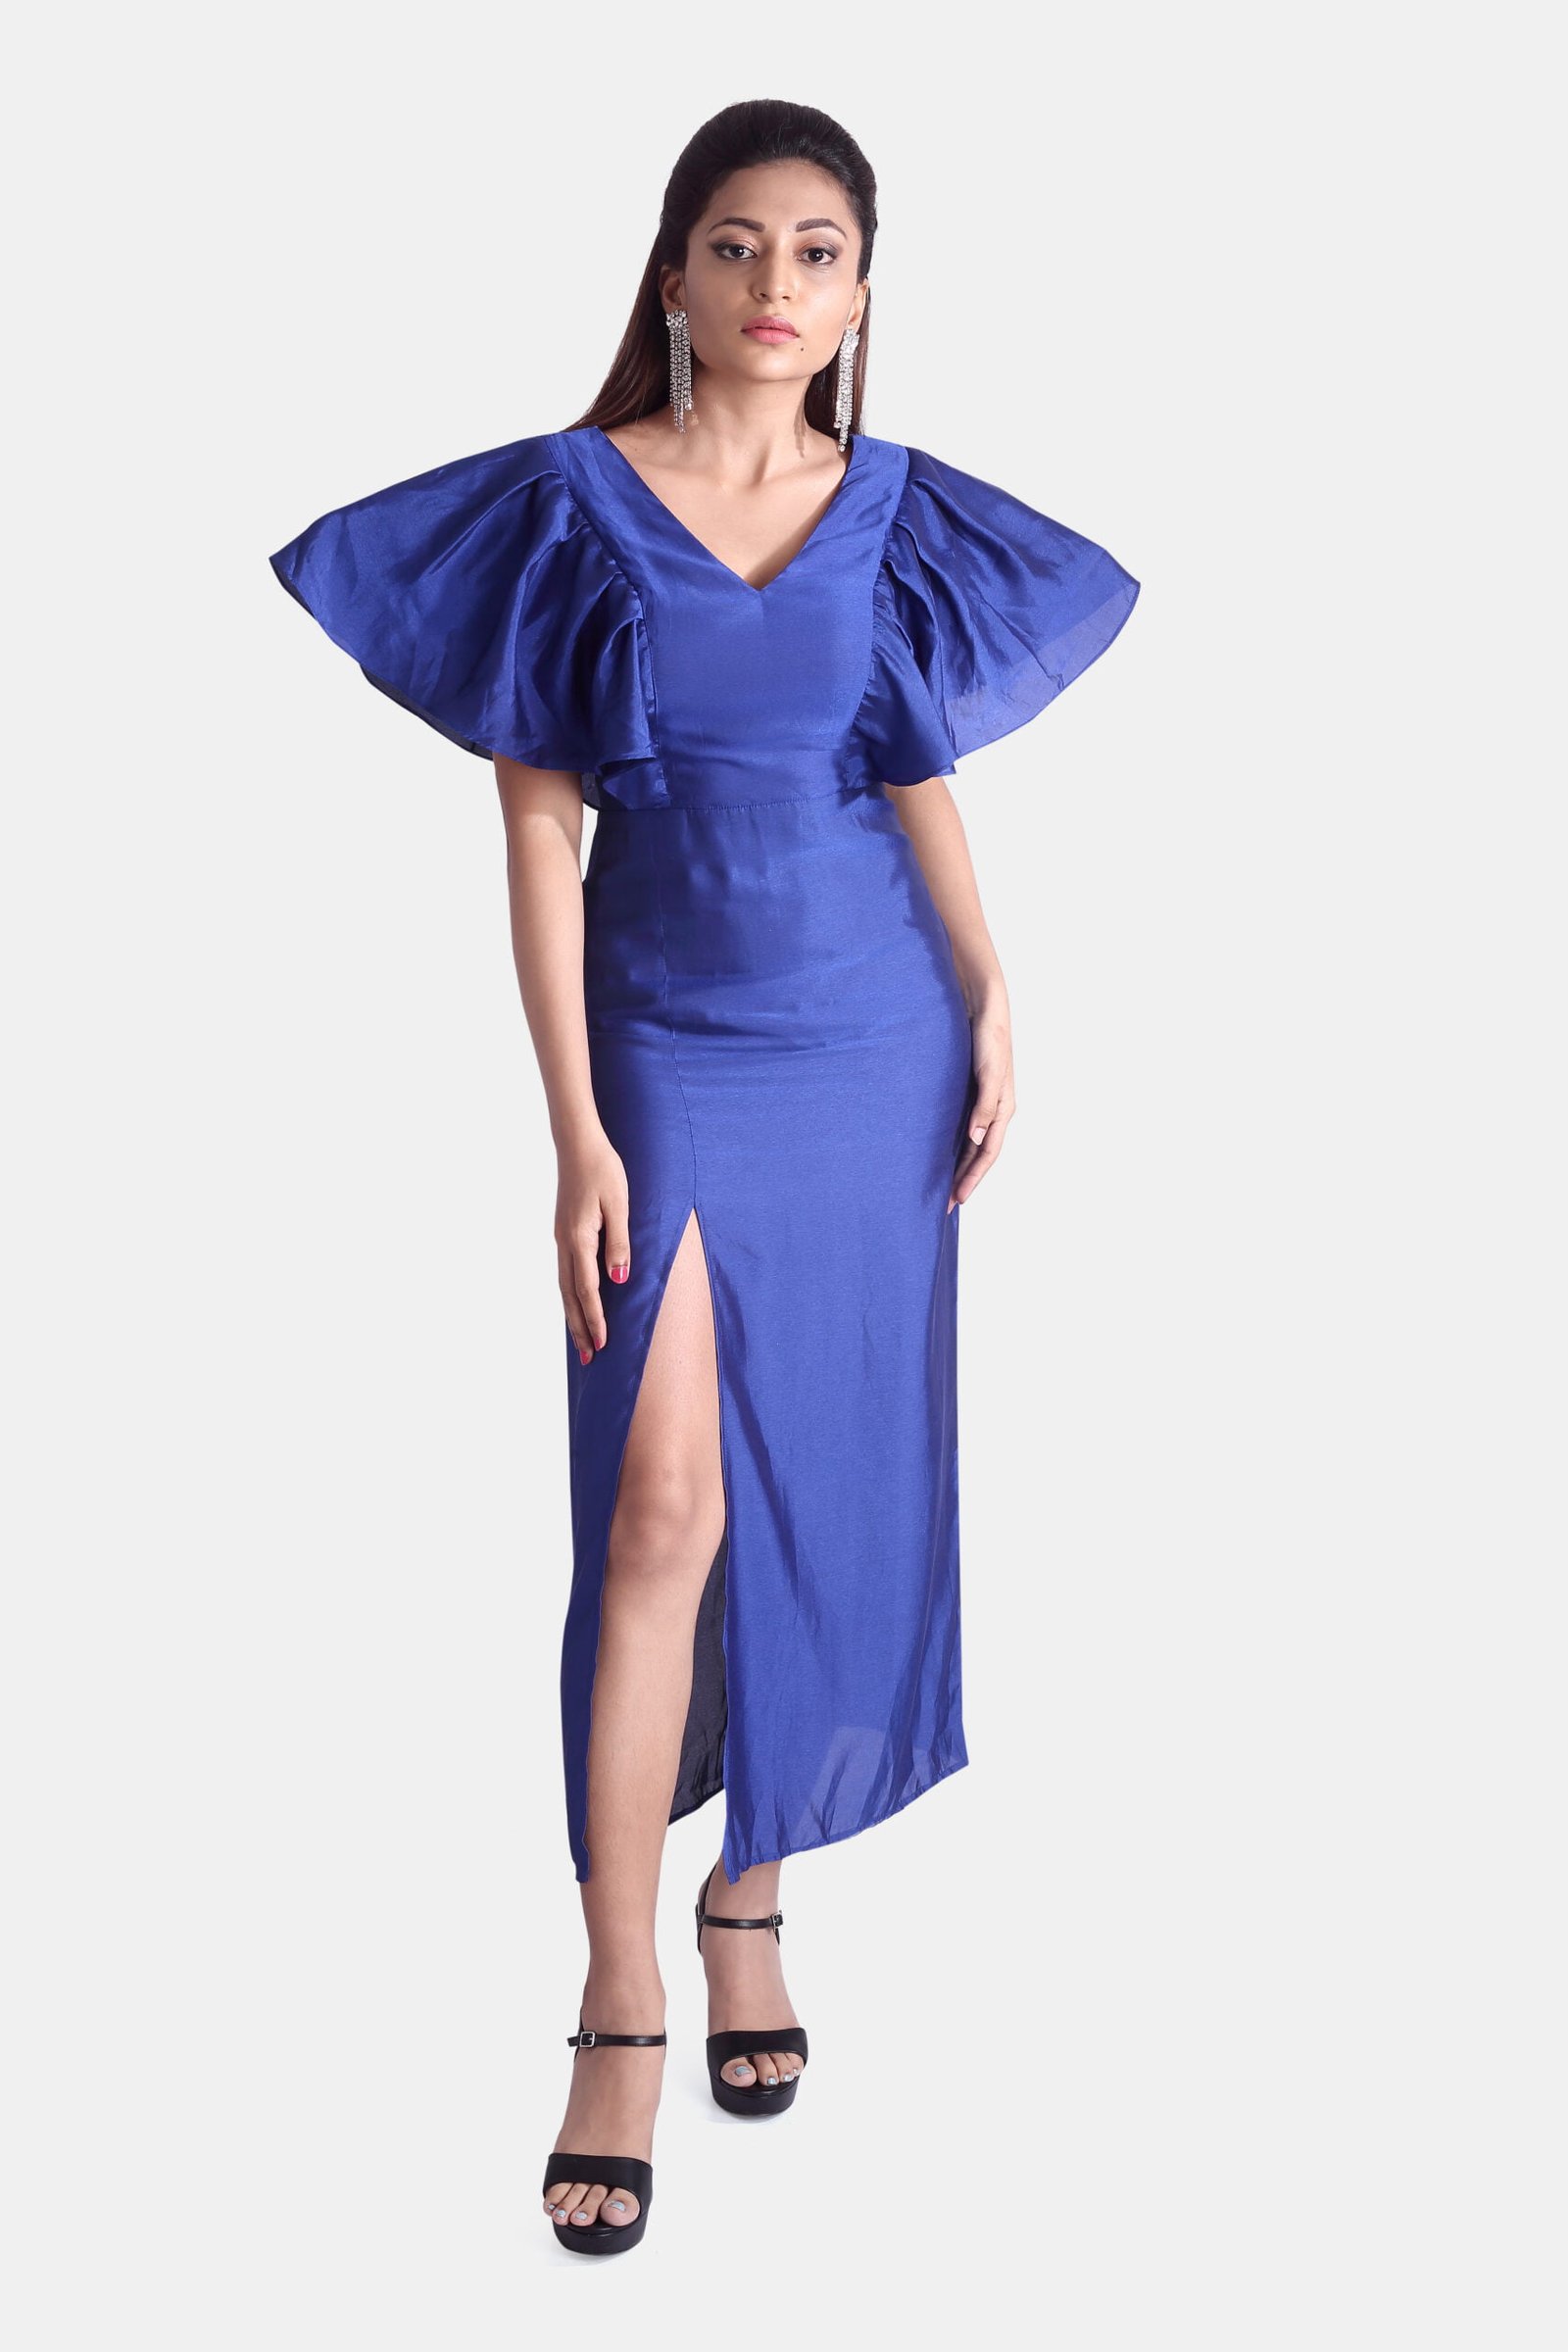 Triene women’s premium long split blue dress